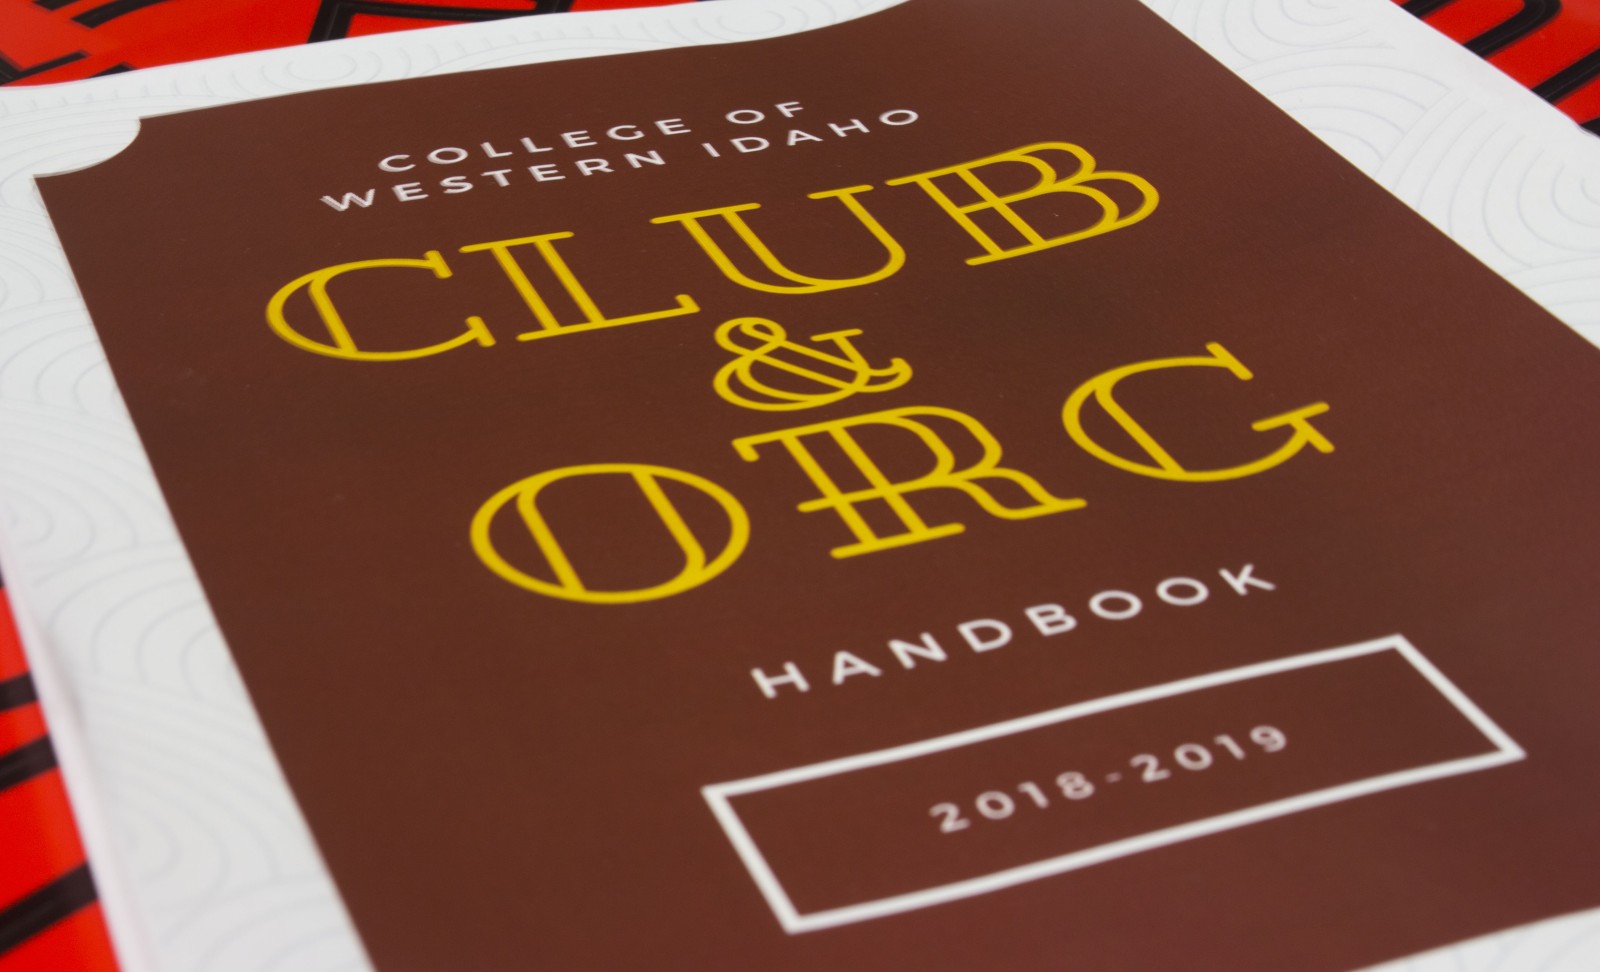 2018-19 Club and organization renewal